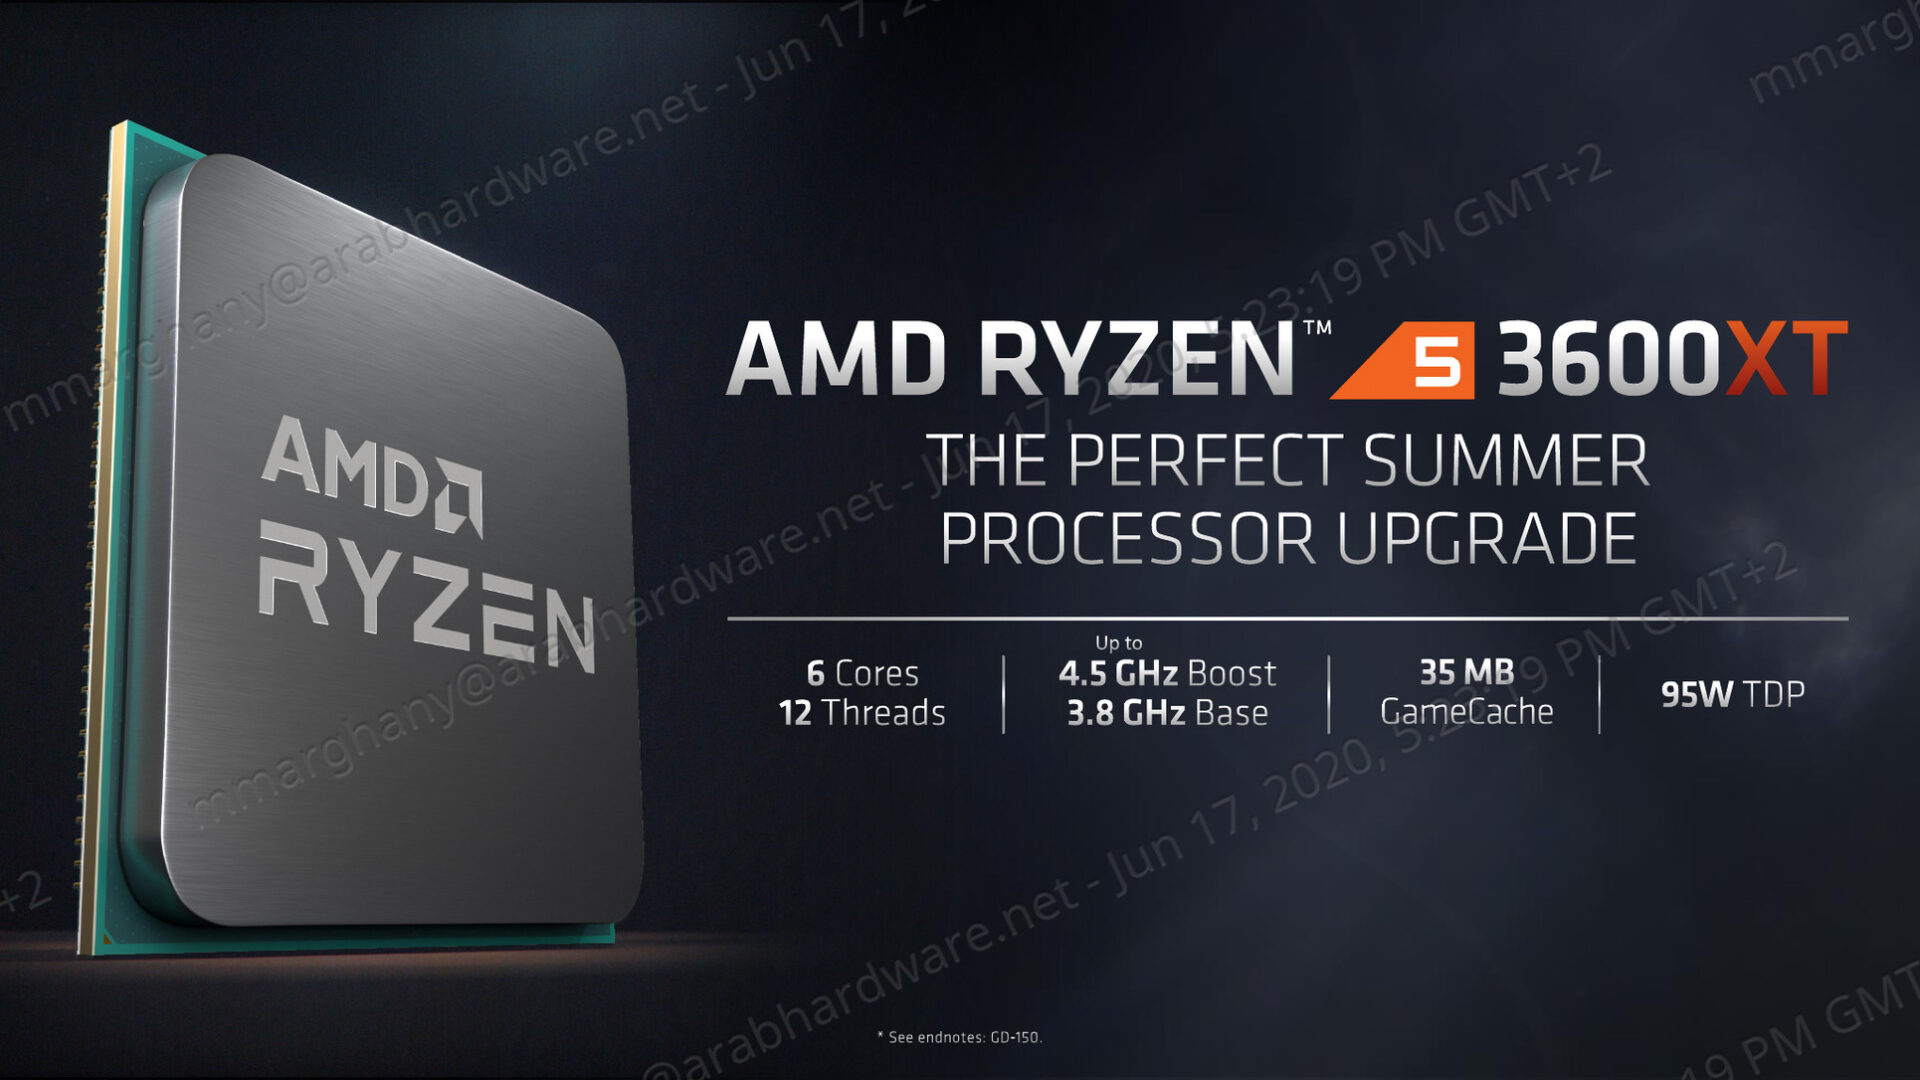 ثلاثة تجميعات للثلاثة معالجات في سلسلة AMD Ryzen XT الجديدة!